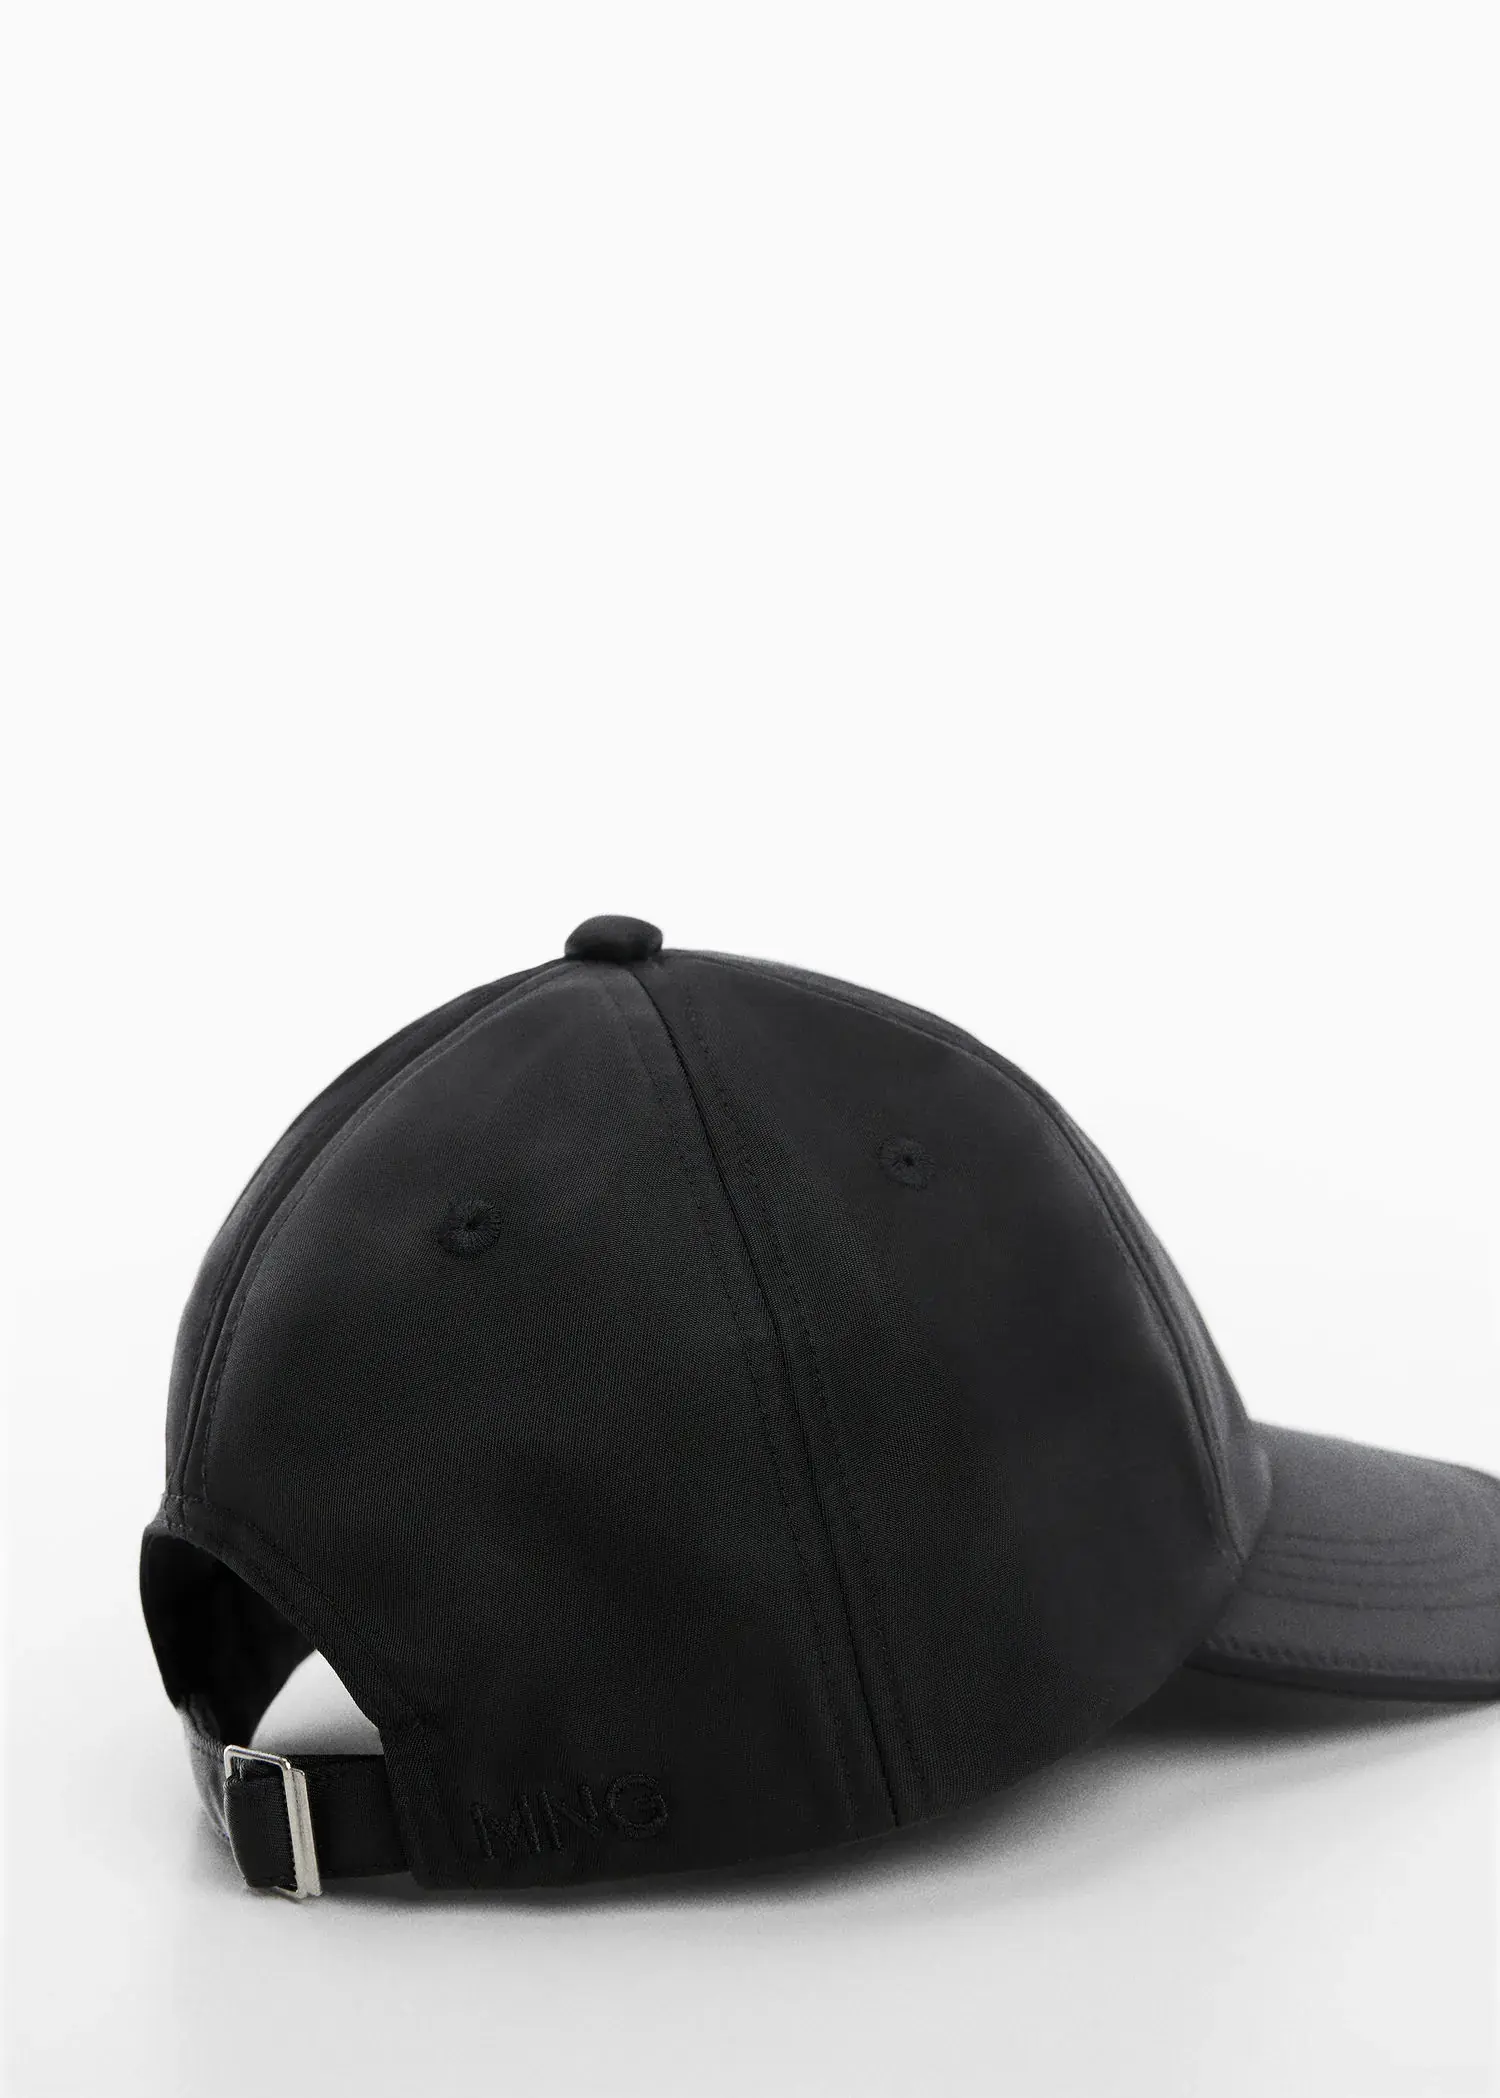 Mango Soft visor cap. 2